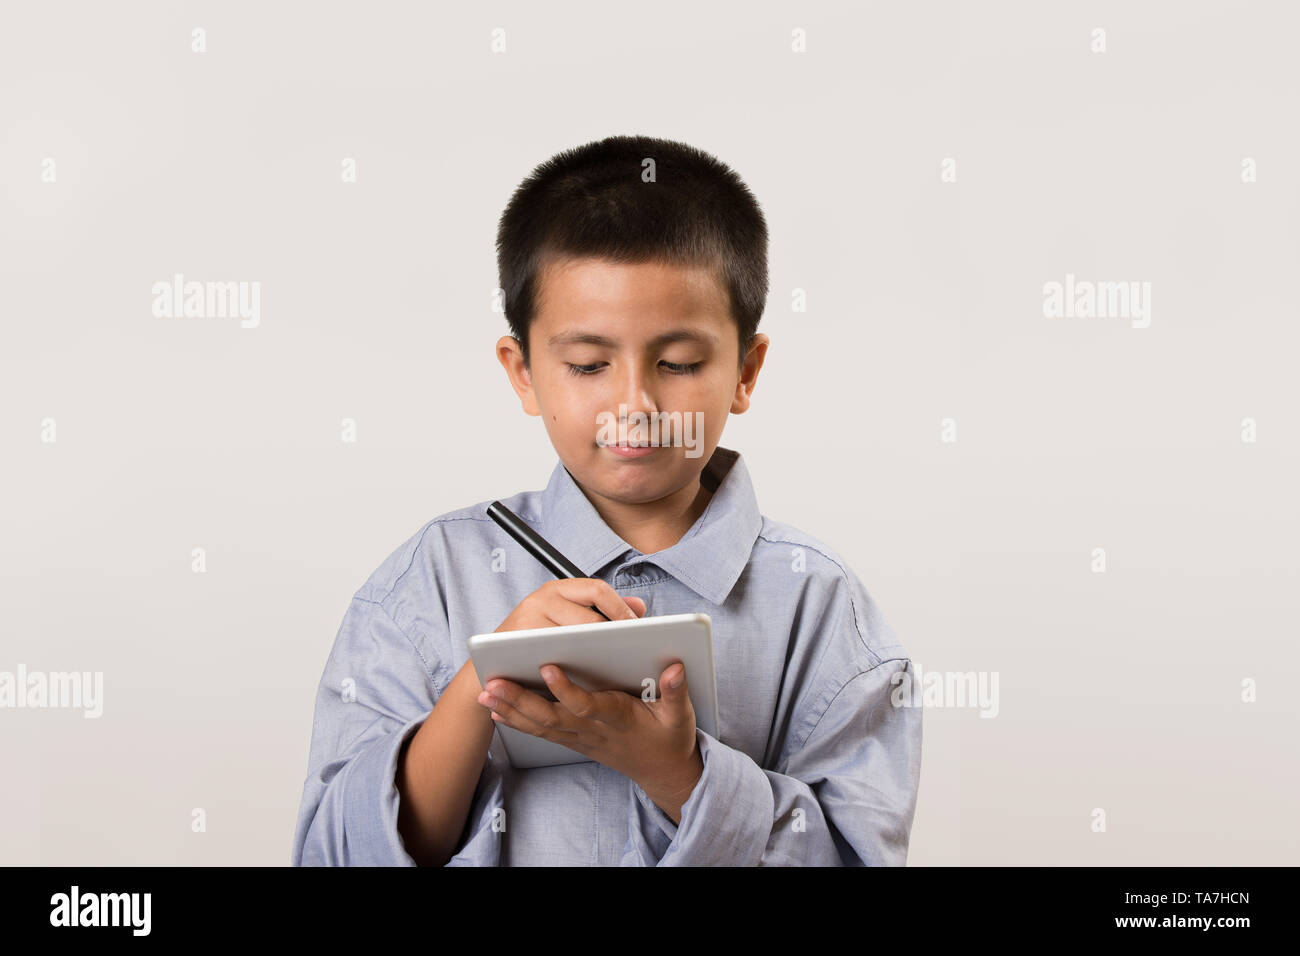 Jeune garçon portant ses pères shirt faisant semblant d'être homme d'affaires avec les appareils numériques et un stylo. L'éducation de la petite enfance, l'apprentissage jouer avec copie de l'image concept Banque D'Images